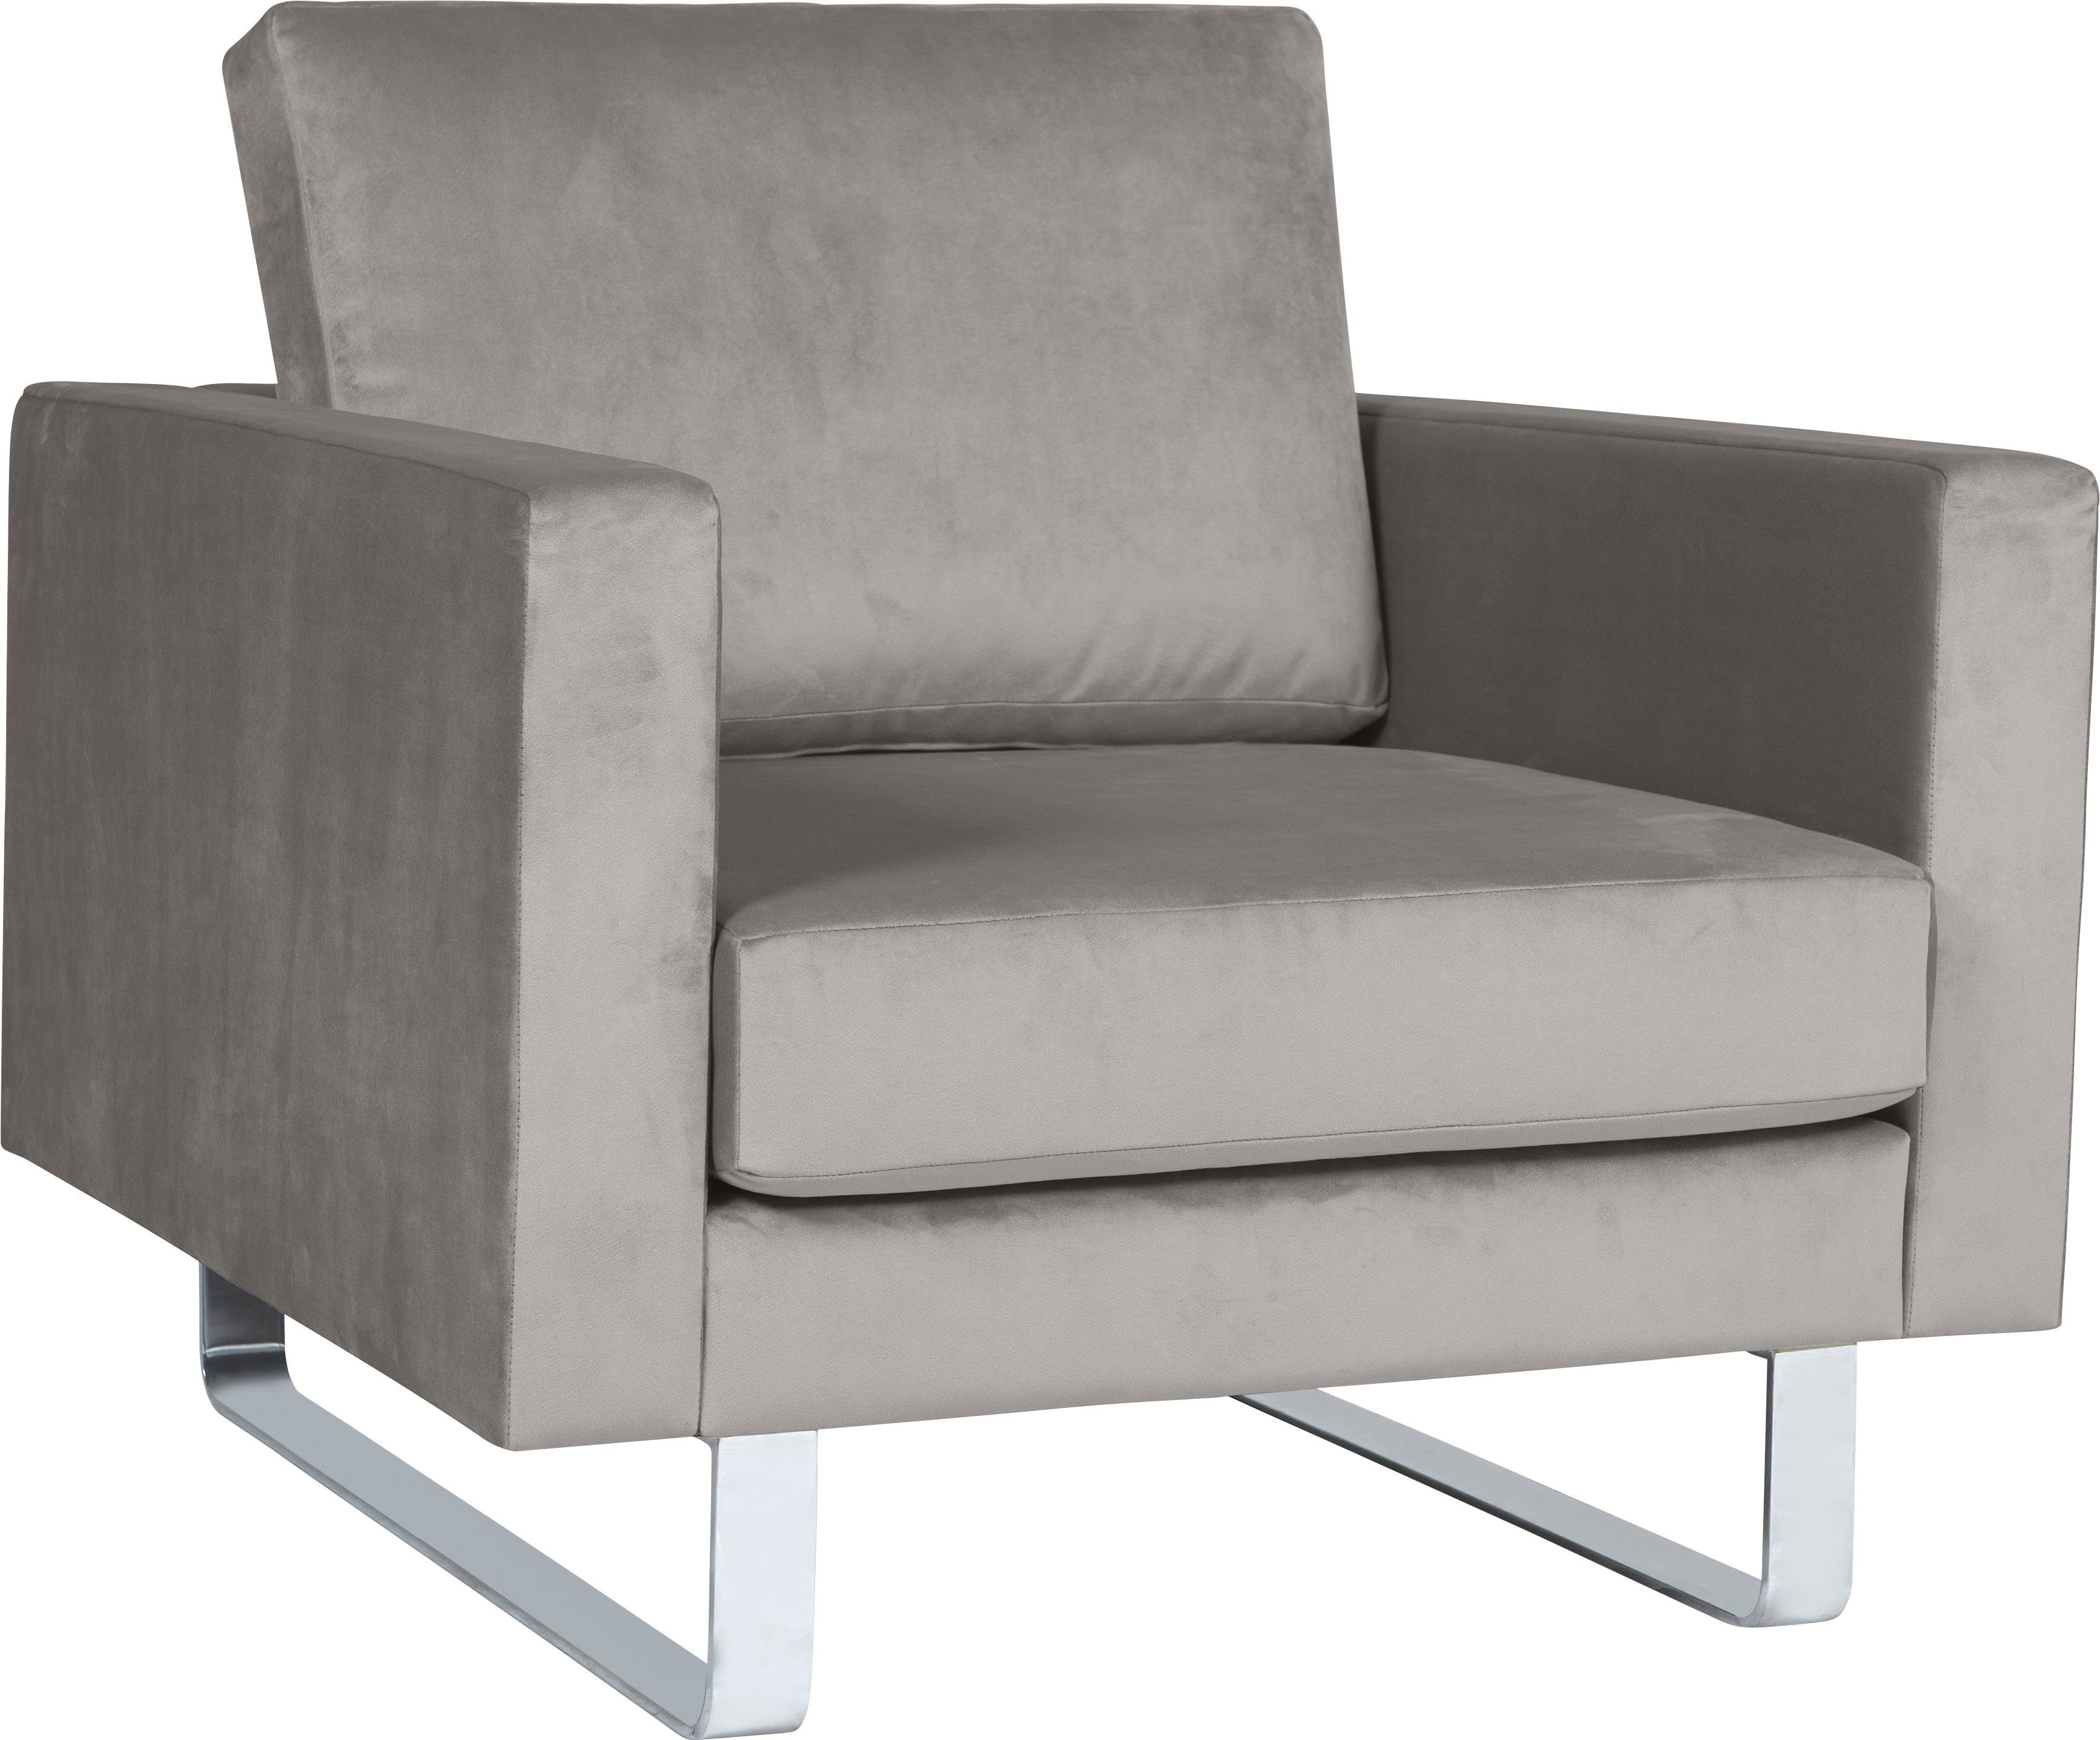 Metallkufen Sessel Velina, Alte Gerberei grey light mit